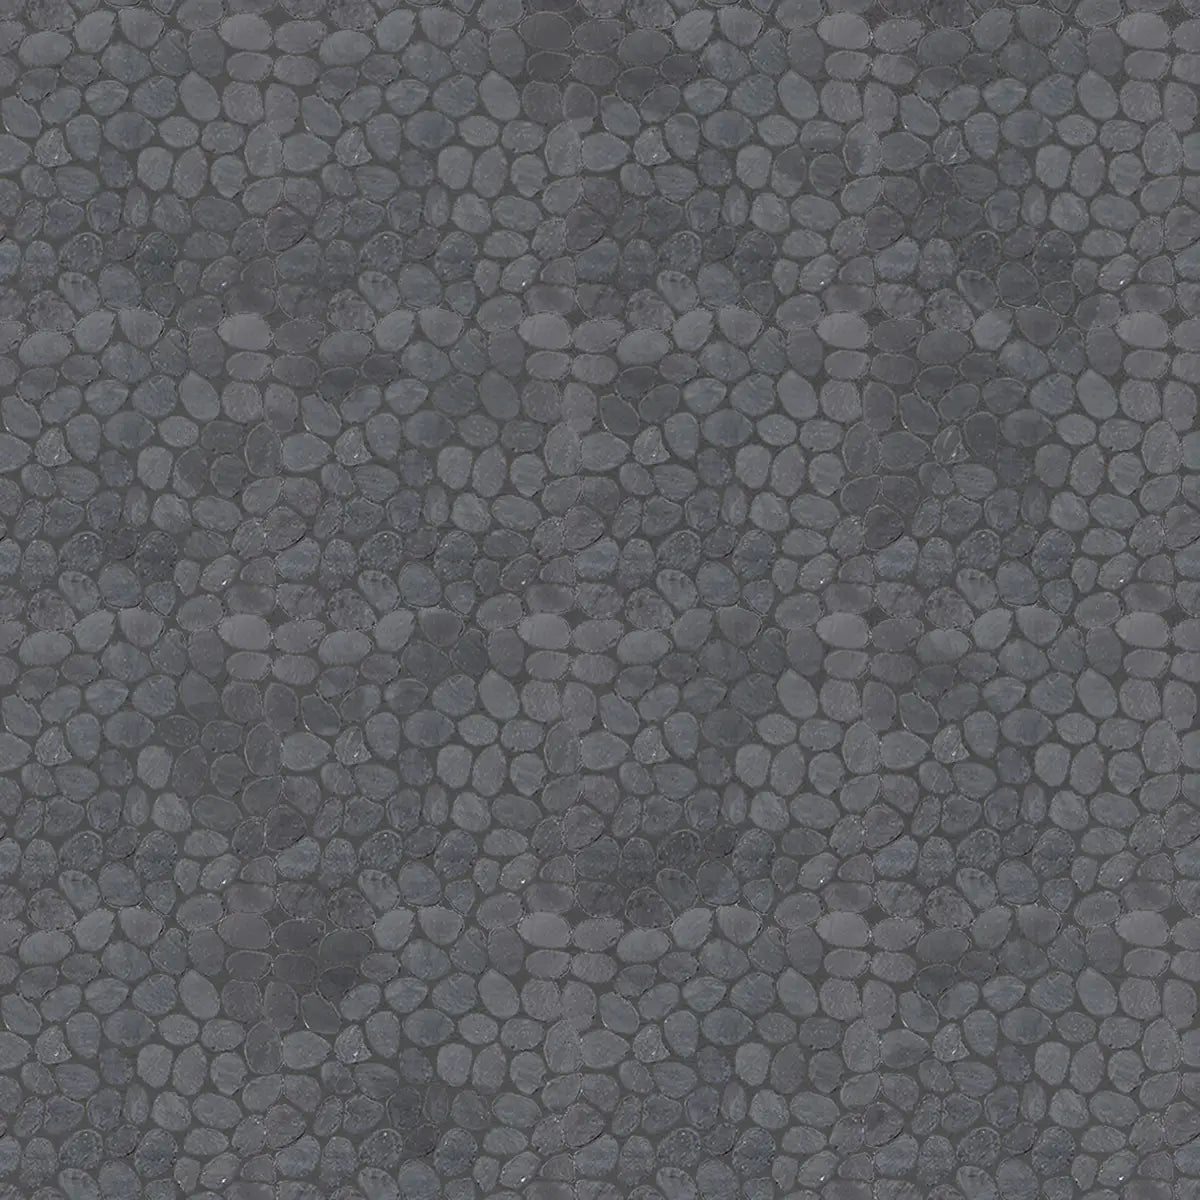 Black Mosaic Tile, Charcoal Sliced Pebble Mosaic Wall & Floor Tile